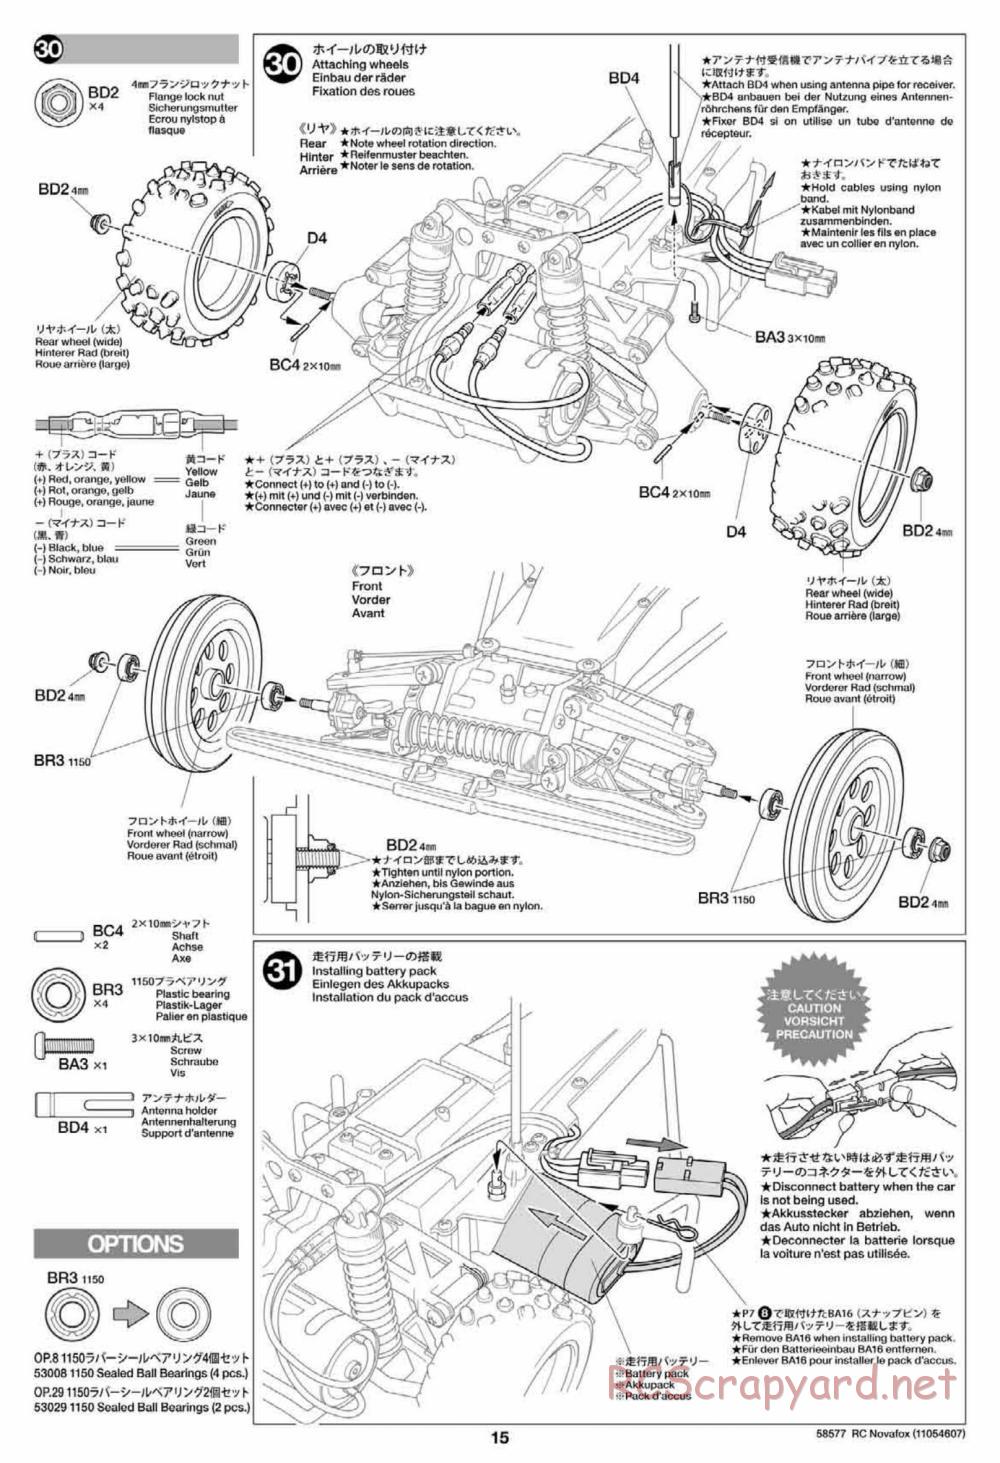 Tamiya - Novafox Chassis - Manual - Page 15